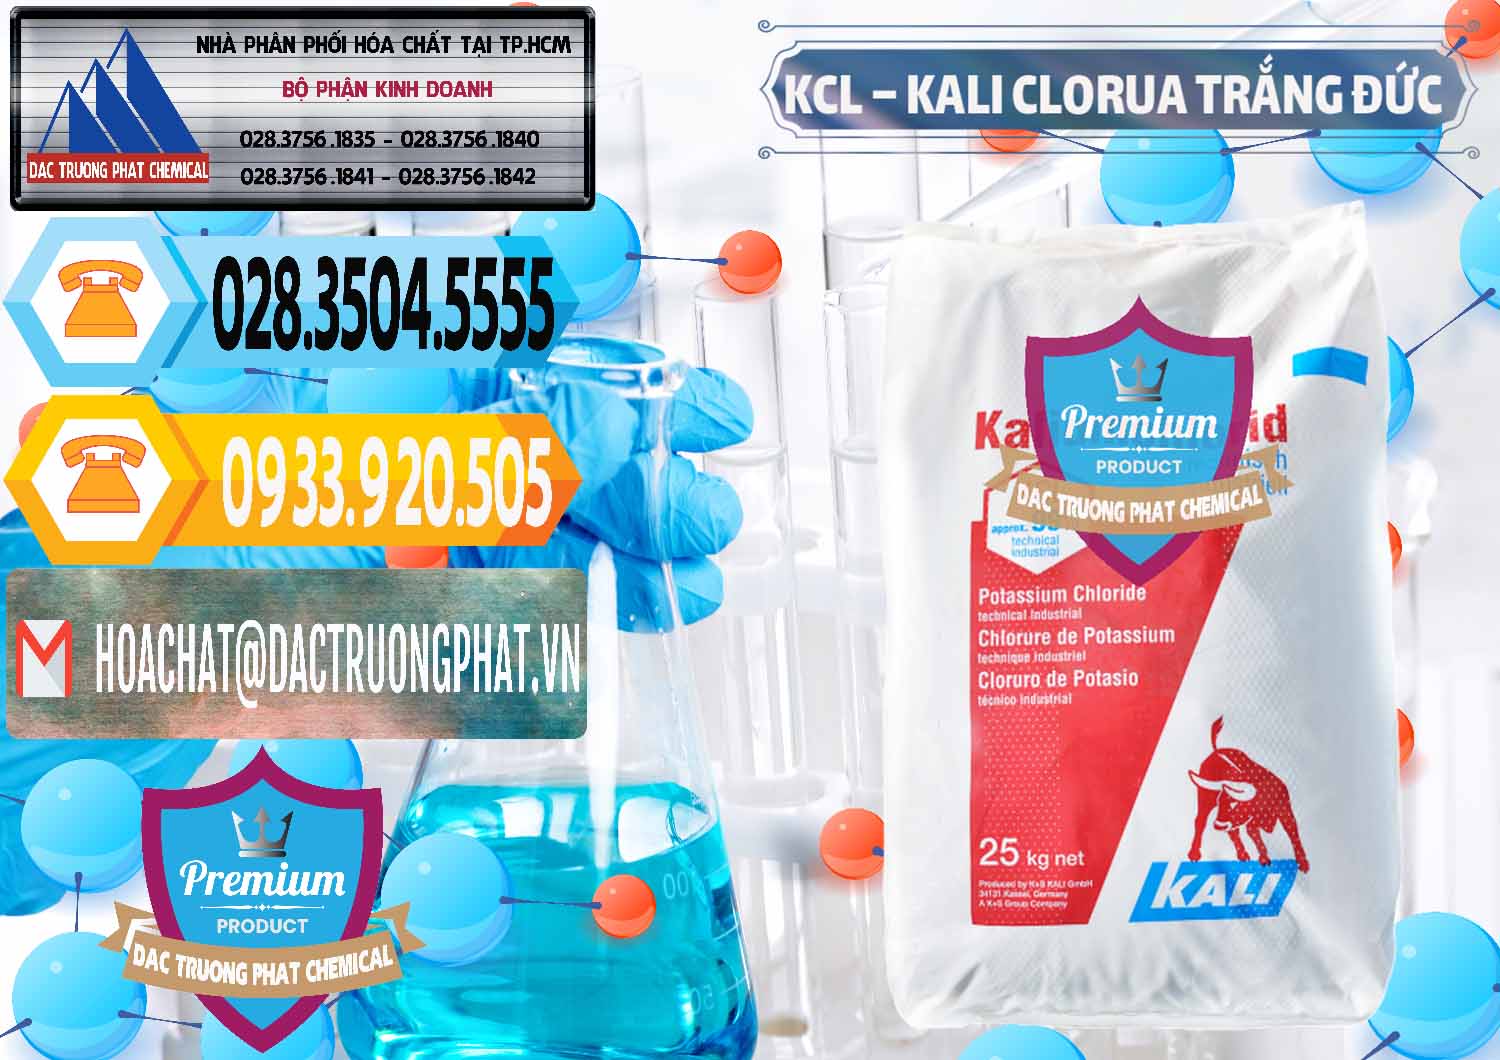 Công ty cung ứng _ bán KCL – Kali Clorua Trắng Đức Germany - 0086 - Công ty chuyên bán - cung cấp hóa chất tại TP.HCM - hoachattayrua.net